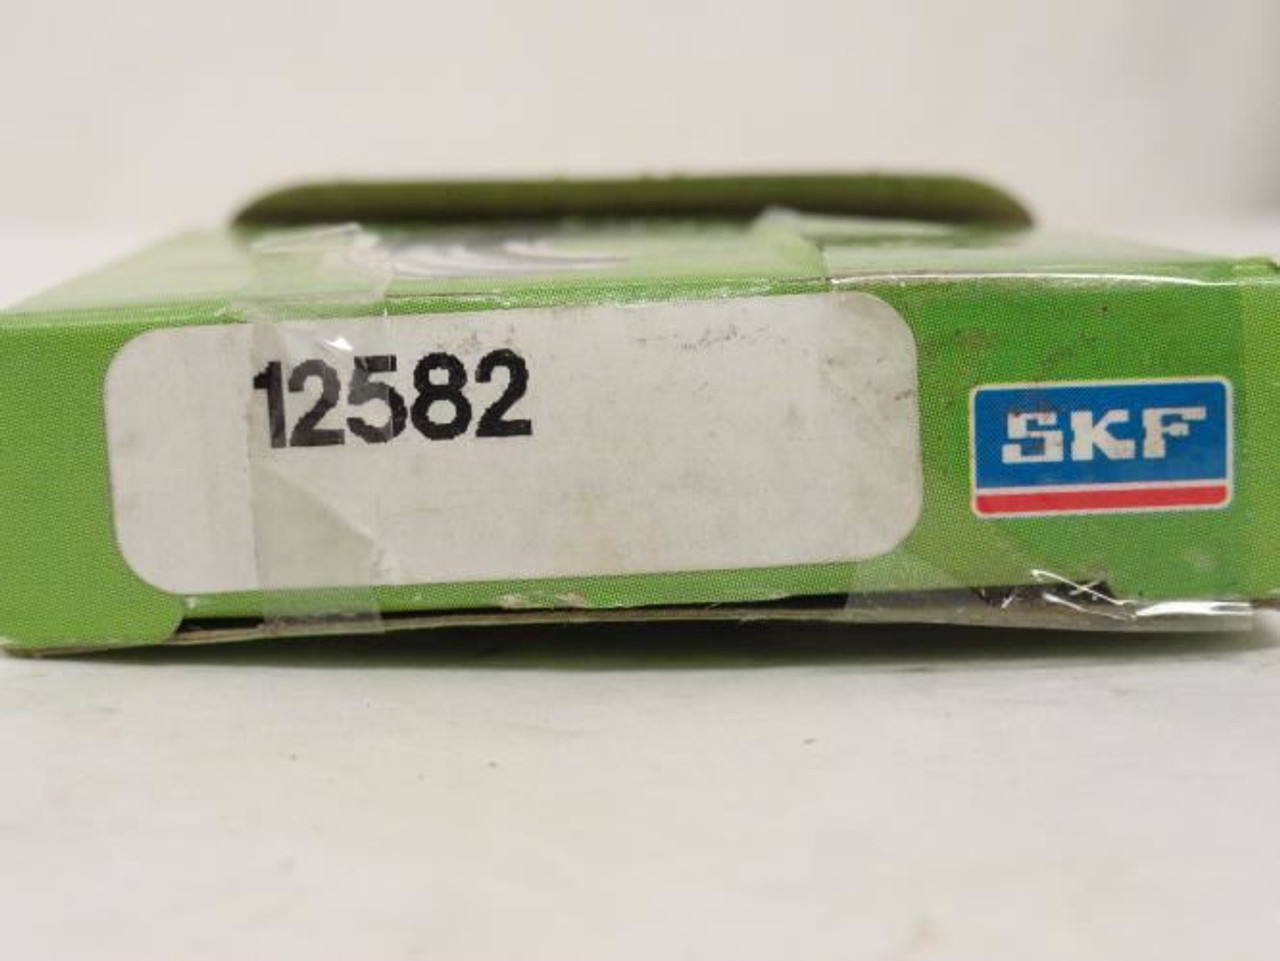 SKF 12582; Oil Seal; 1-1/4"ID x 2-1/4" OD x 1/4" Width